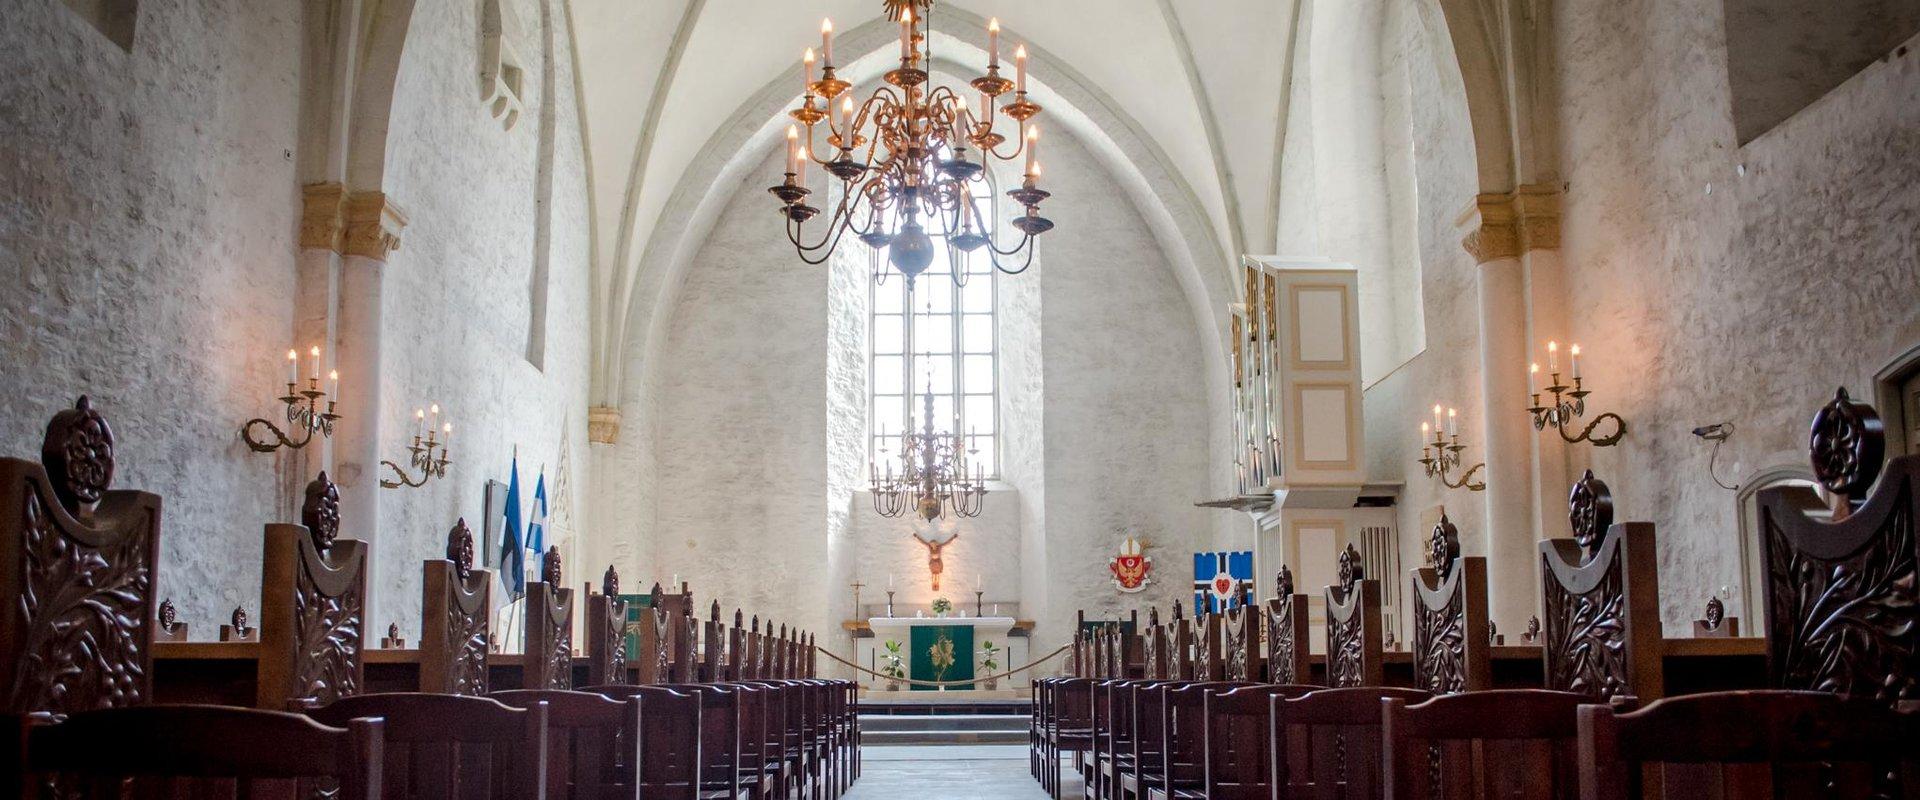 1279. gadā pirmreizēji pieminētā Hāpsalu doma baznīca ir viena no lielākajām vienarkas baznīcām Ziemeļvalstīs un Baltijas valstīs. Šī ir Sāmsalas-Vīka